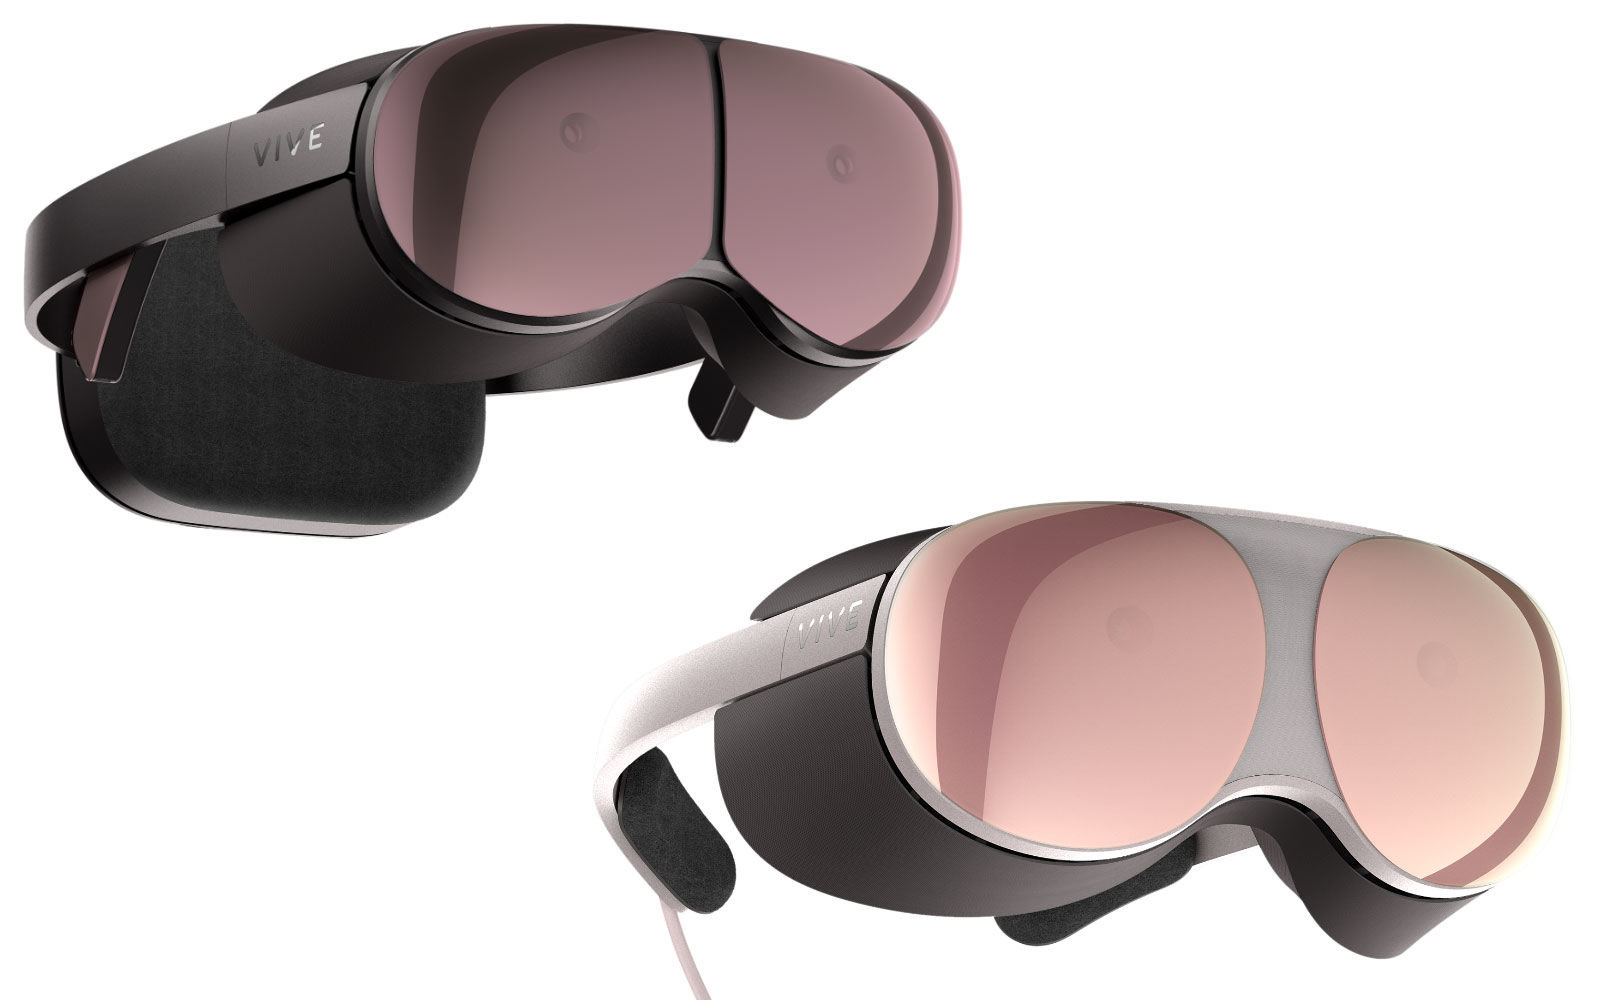 Project Proton của HTC đem đến cái nhìn đầu tiên về thiết bị VR thế hệ mới